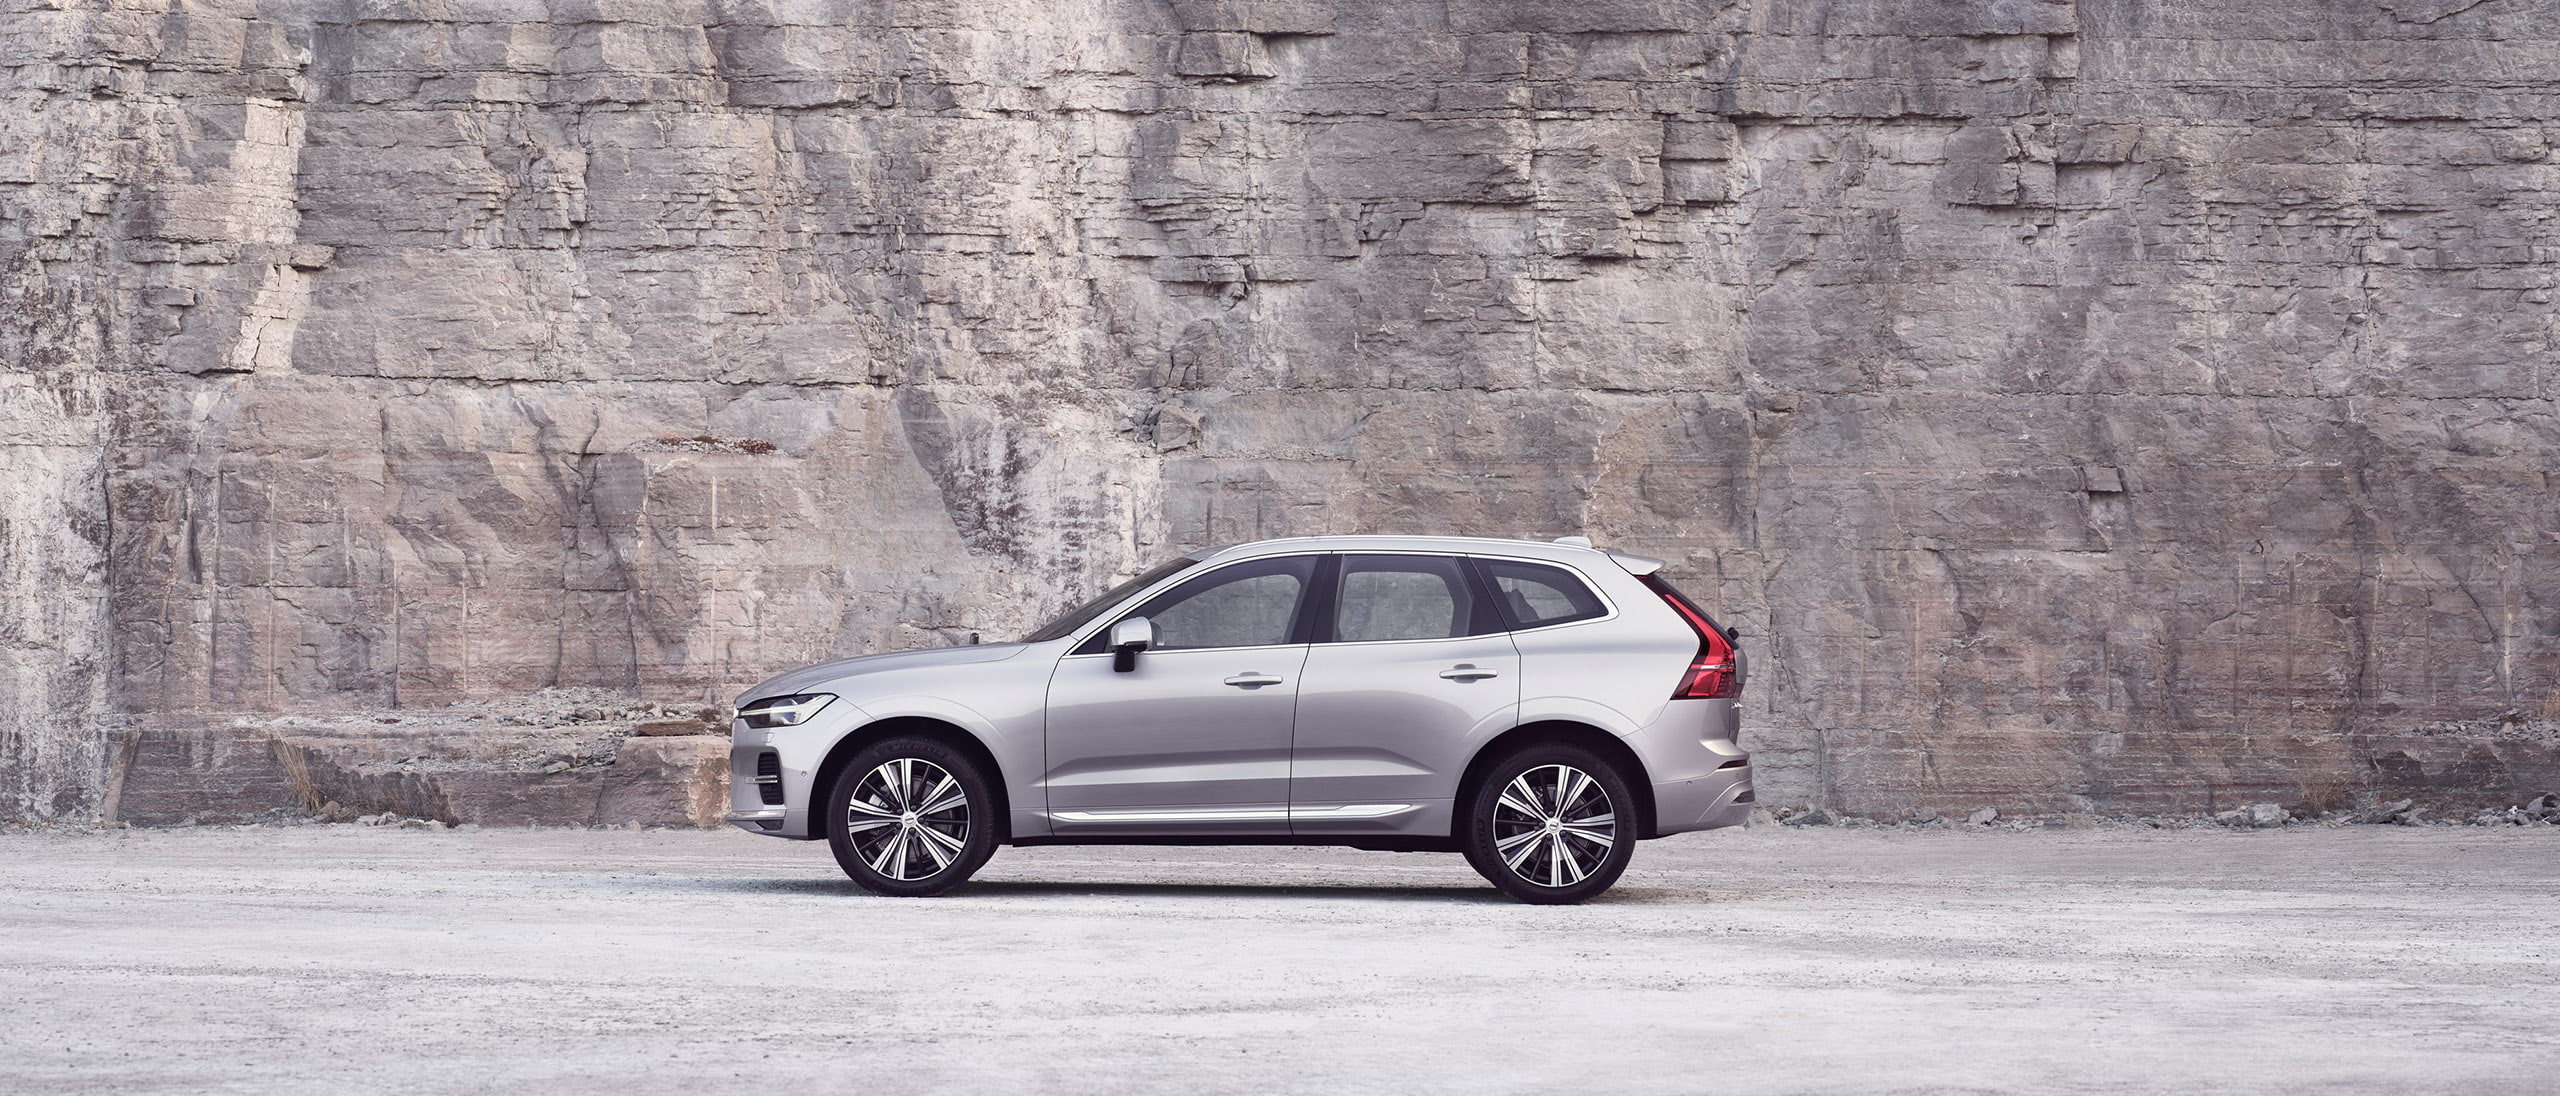 Egy ezüst színű Volvo XC60 parkol egy sziklafal előtt.